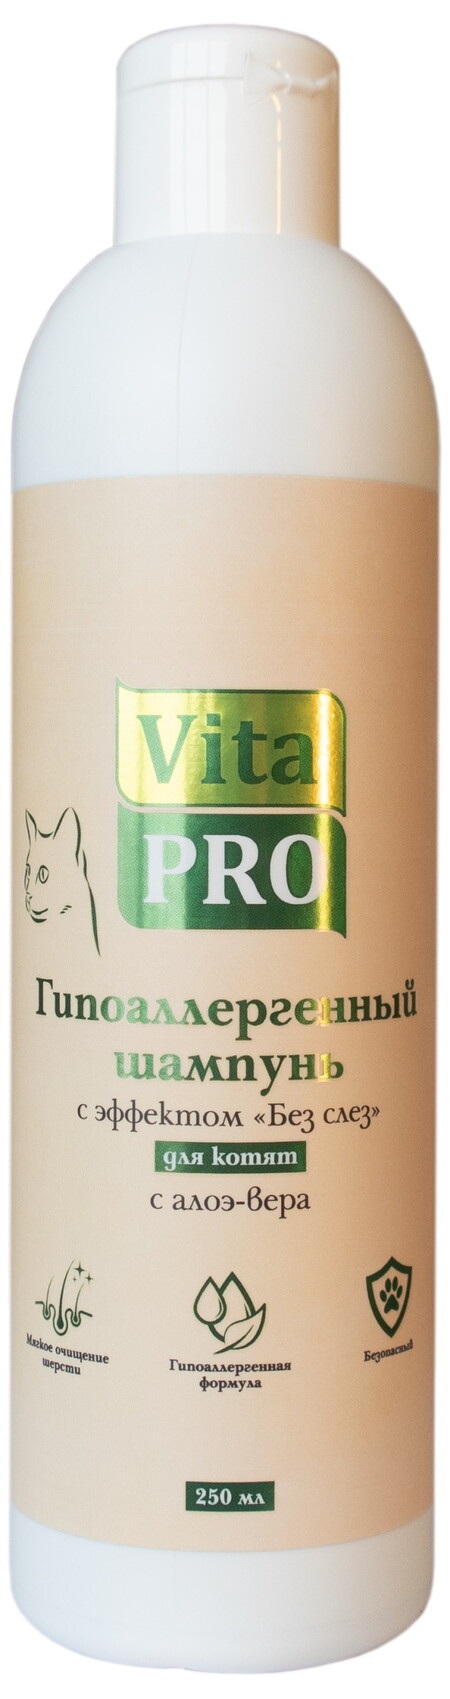 Vita Pro Без слез 250 мл шампунь для котят гипоаллергенный с экстрактом алоэ-вера